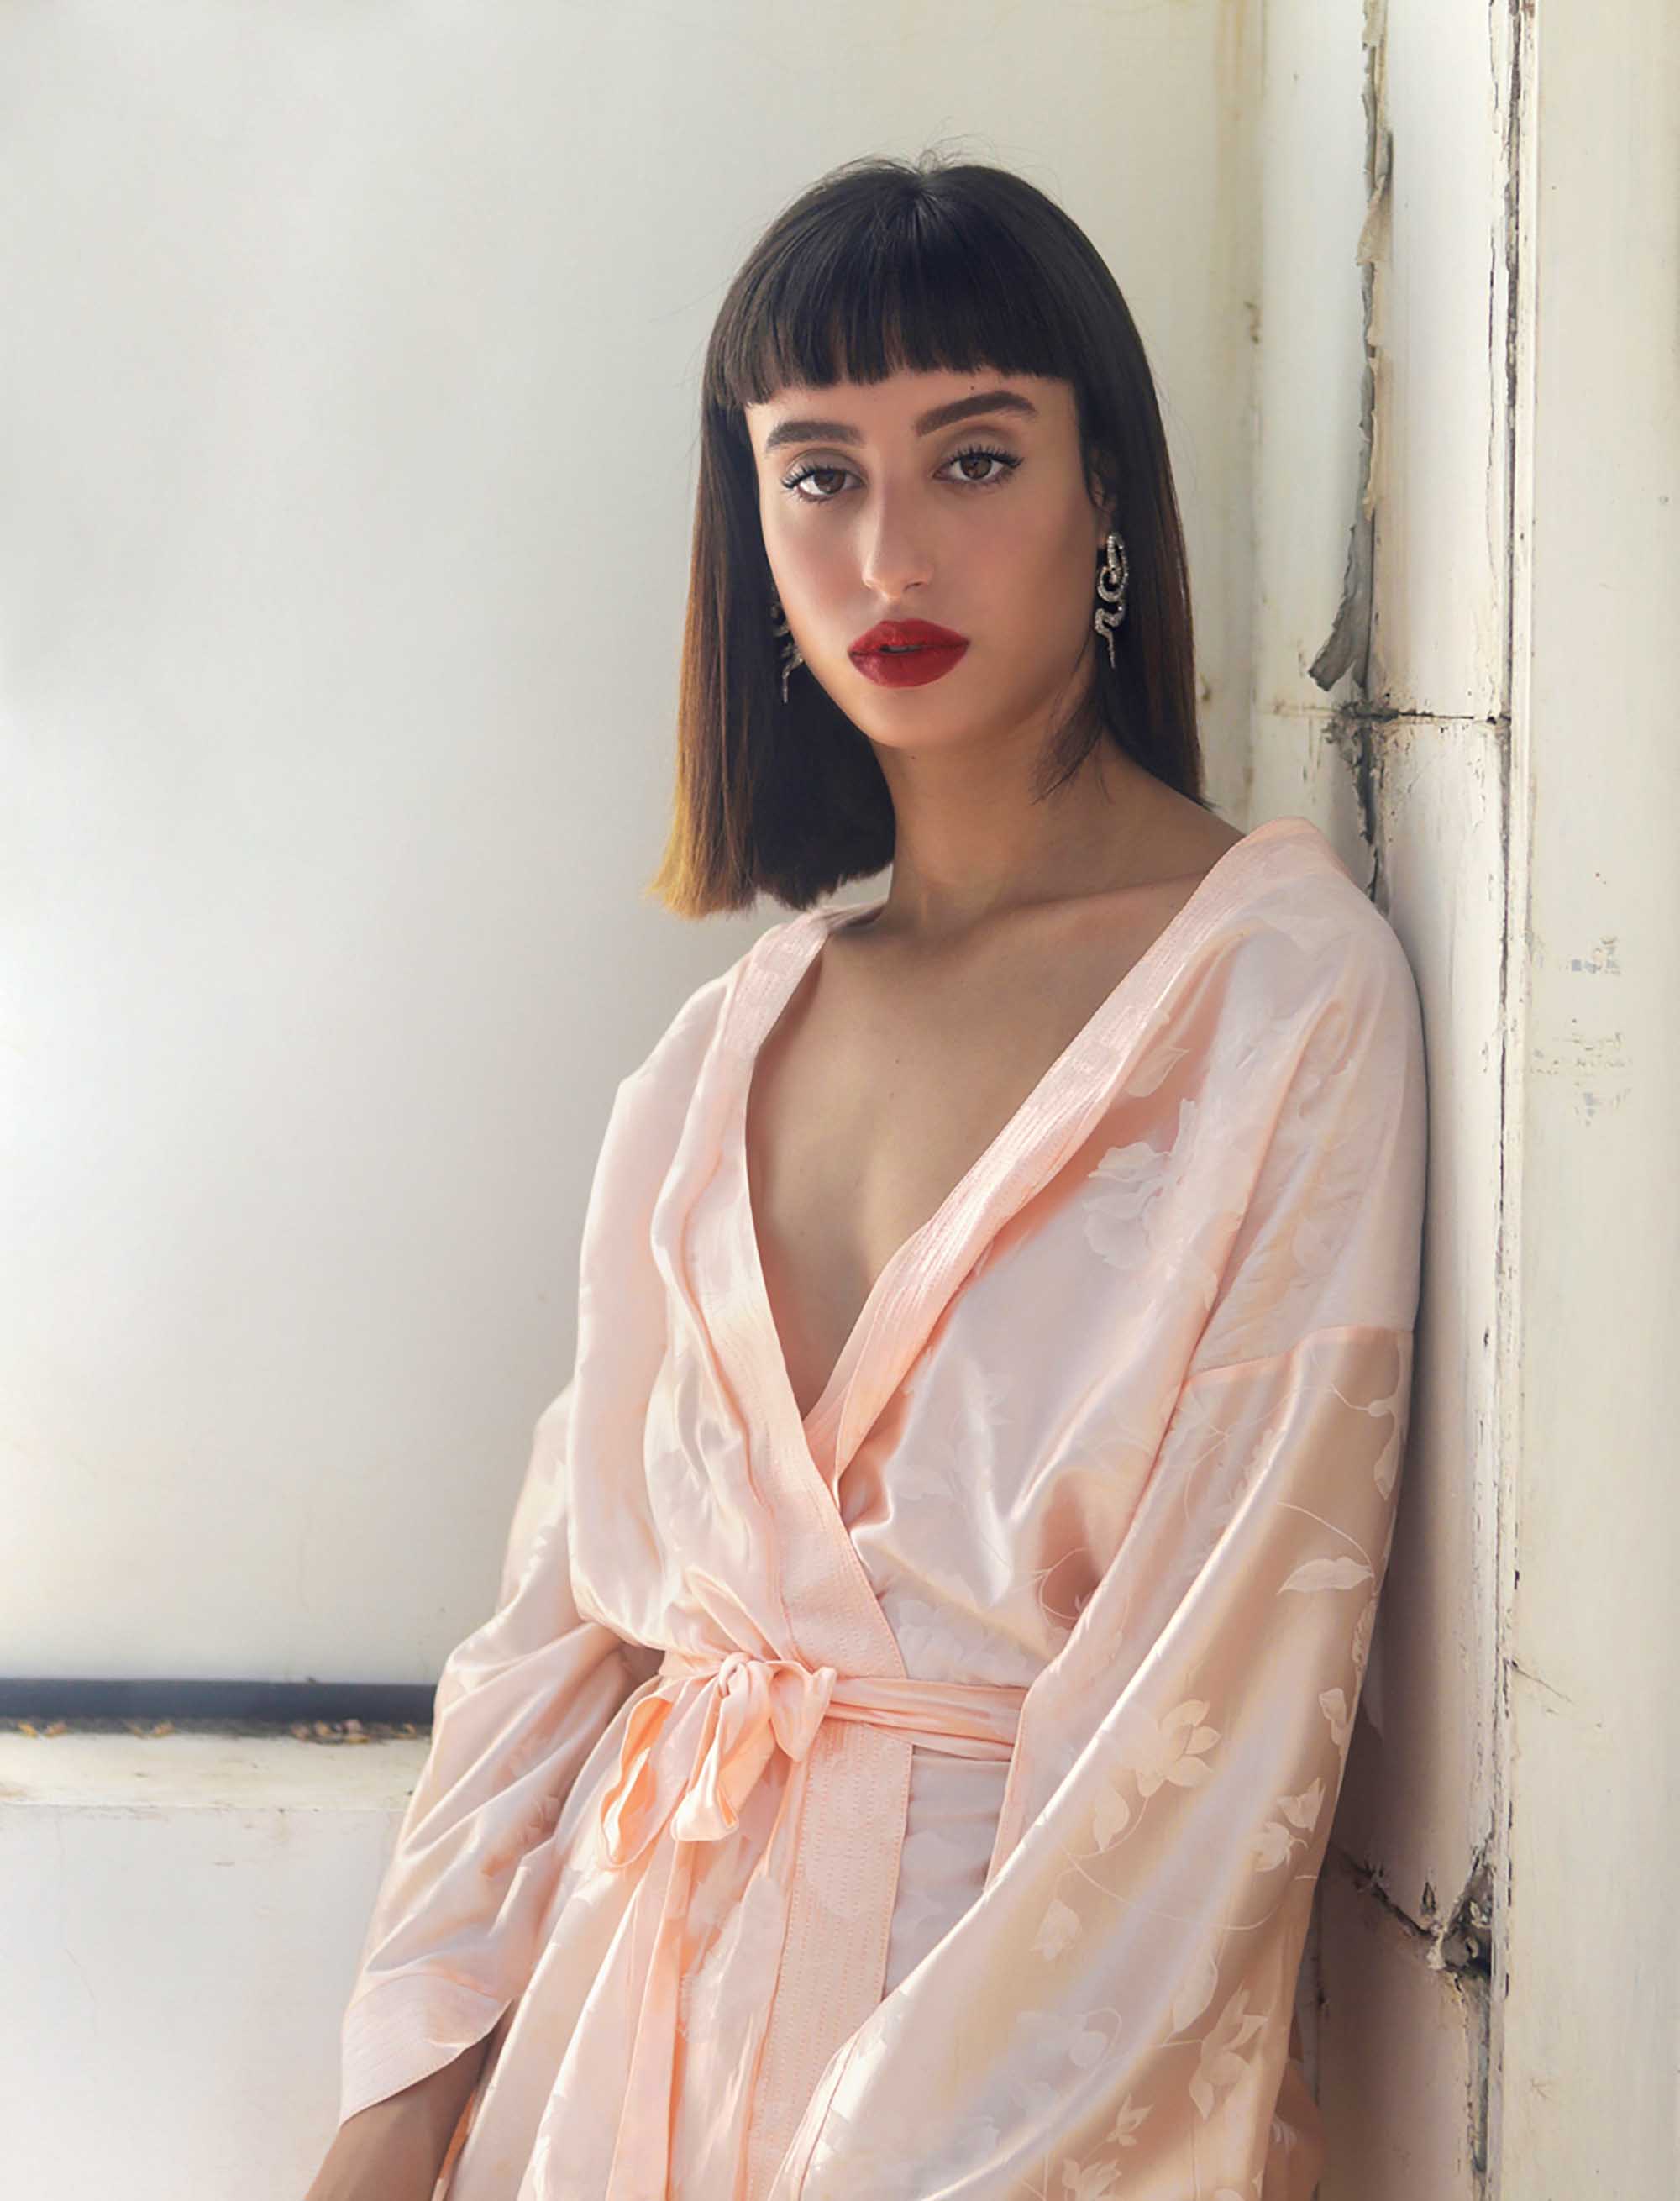 אור שפירא. צילום שרון סטאר, Fashion Israel - מגזין אופנה ישראלי - 16